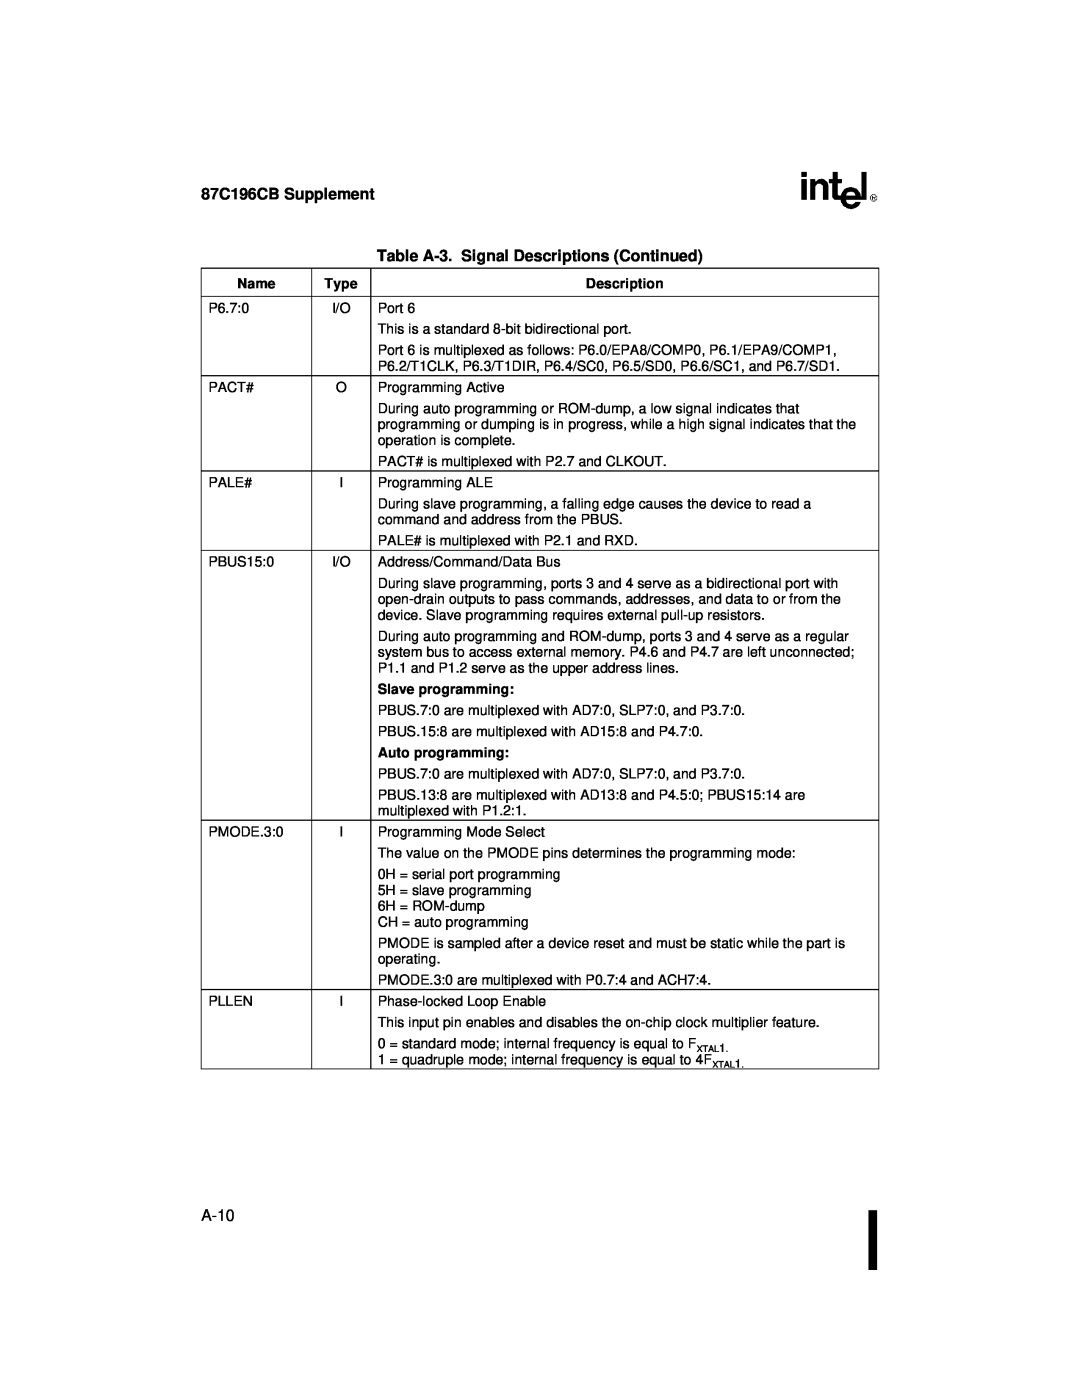 Intel 8XC196NT user manual 87C196CB Supplement, Table A-3. Signal Descriptions Continued, A-10 